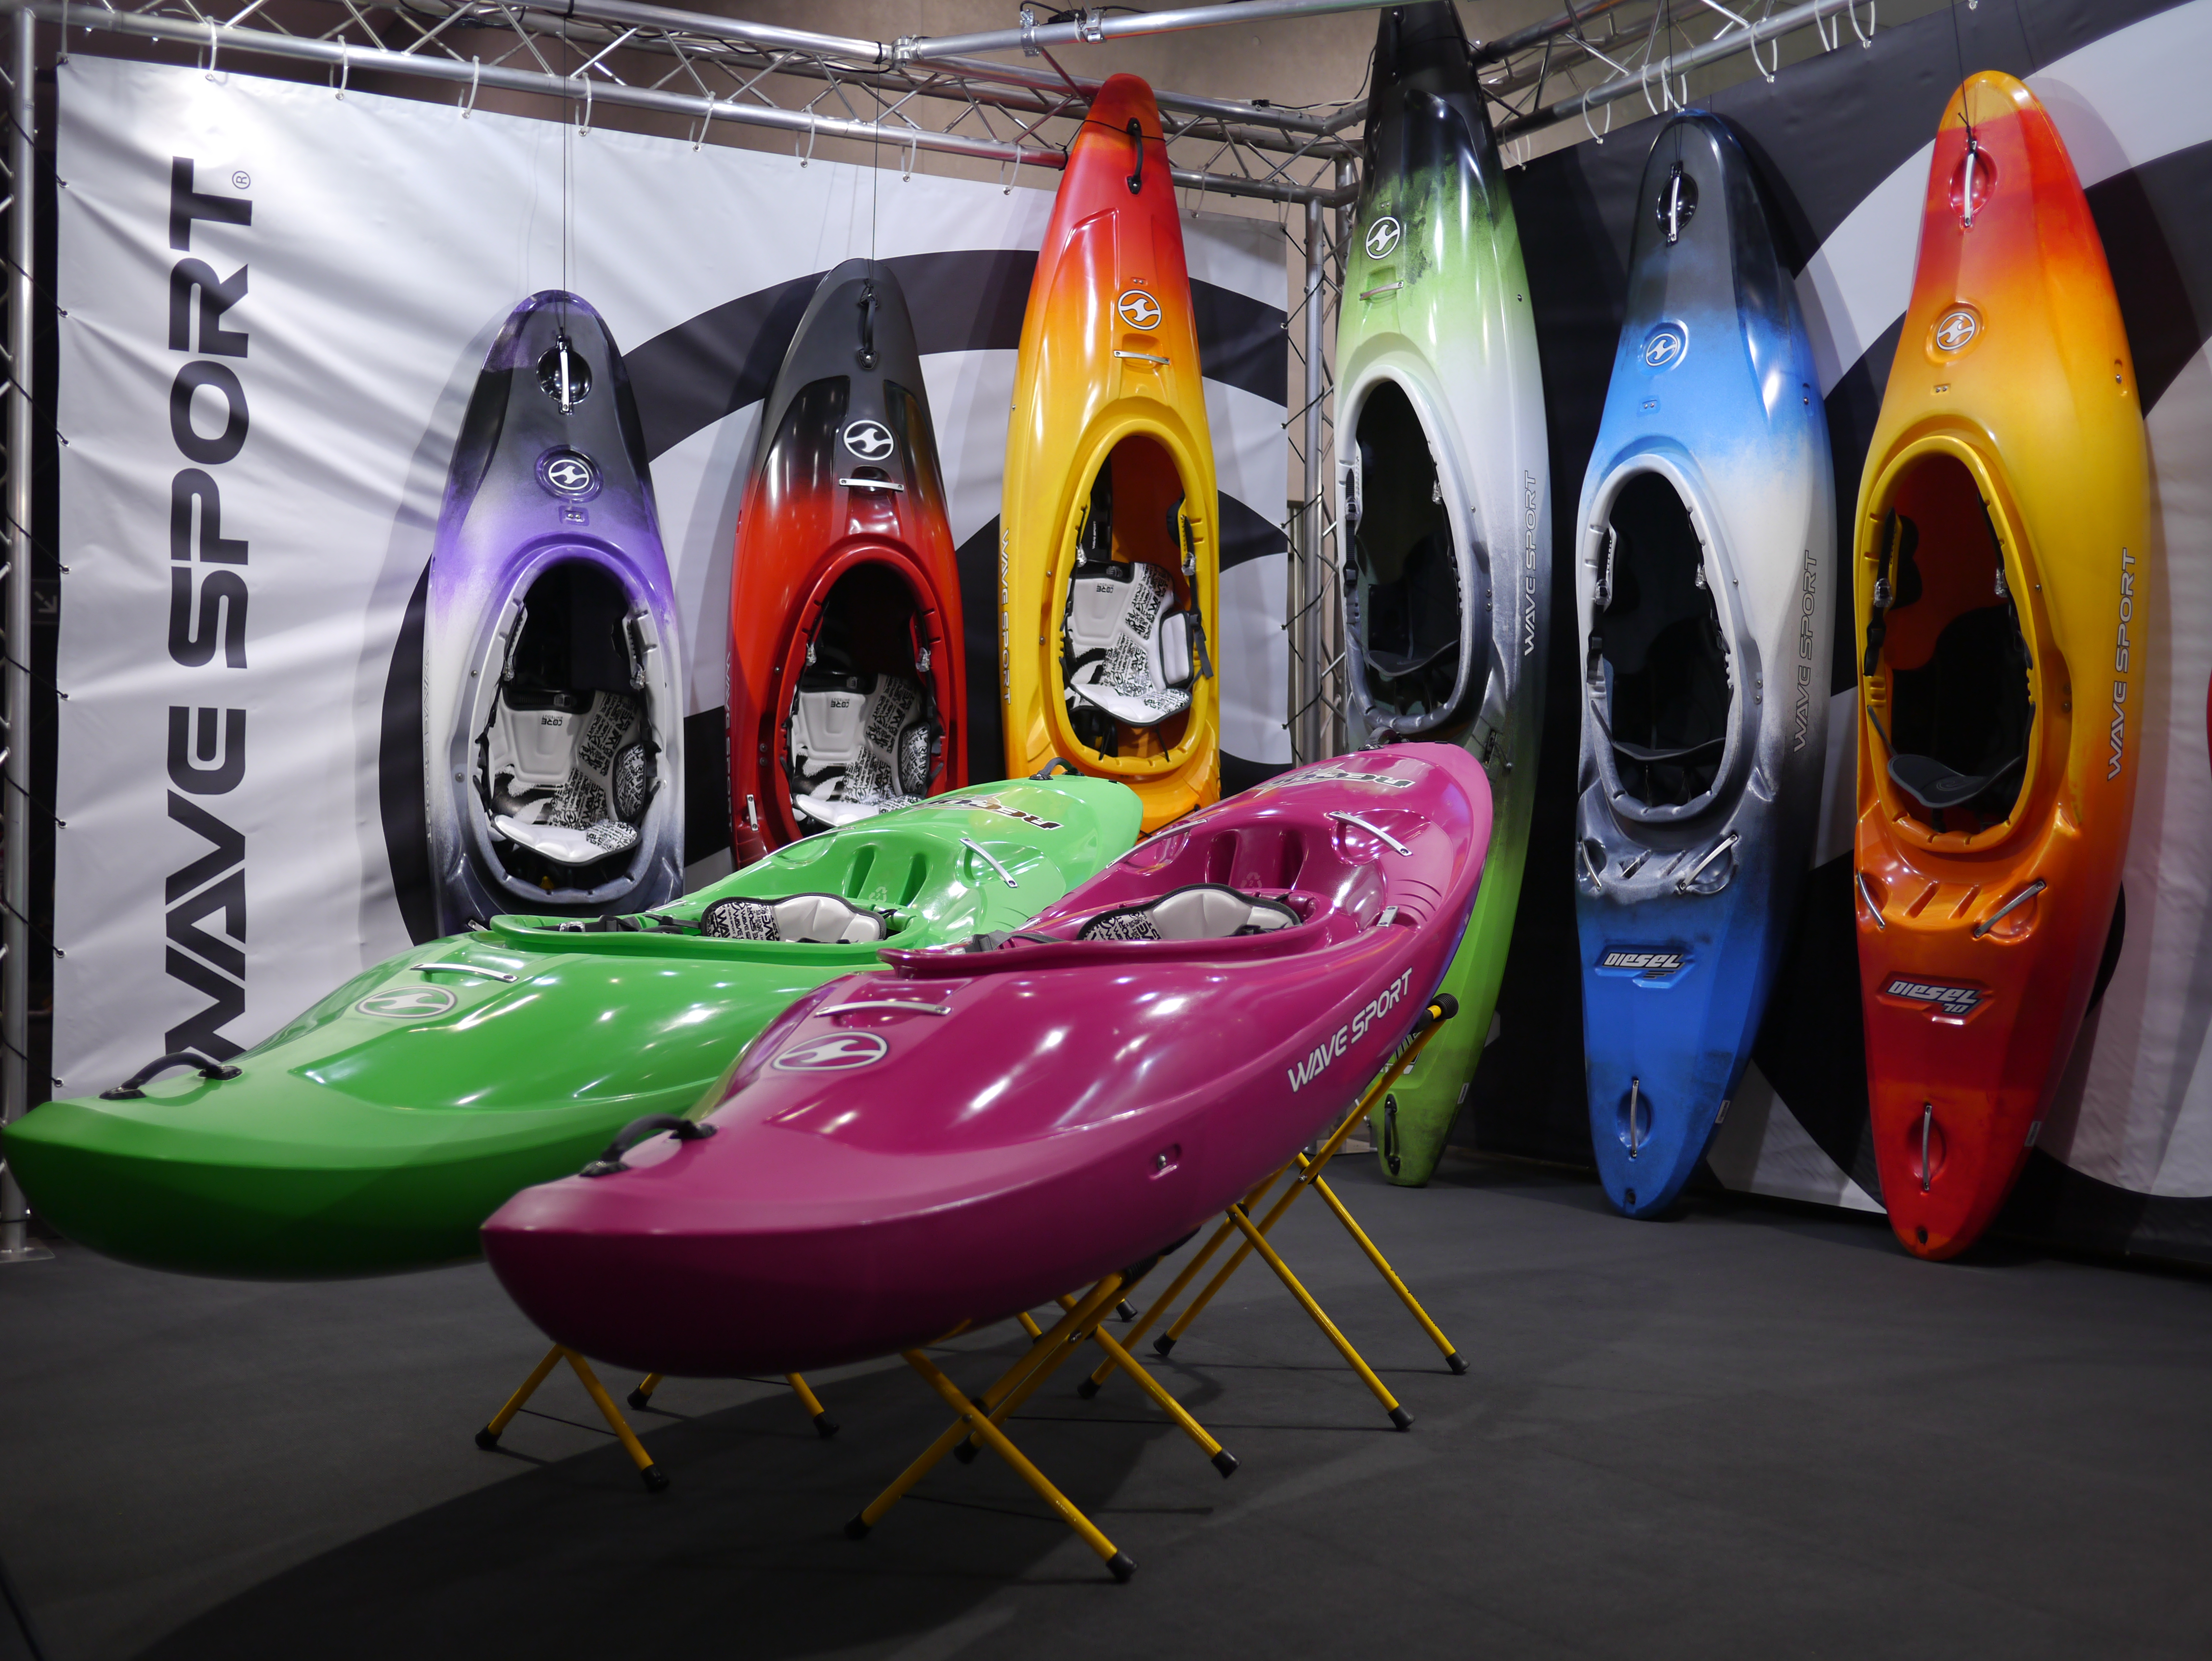 wavesport kayaks on display